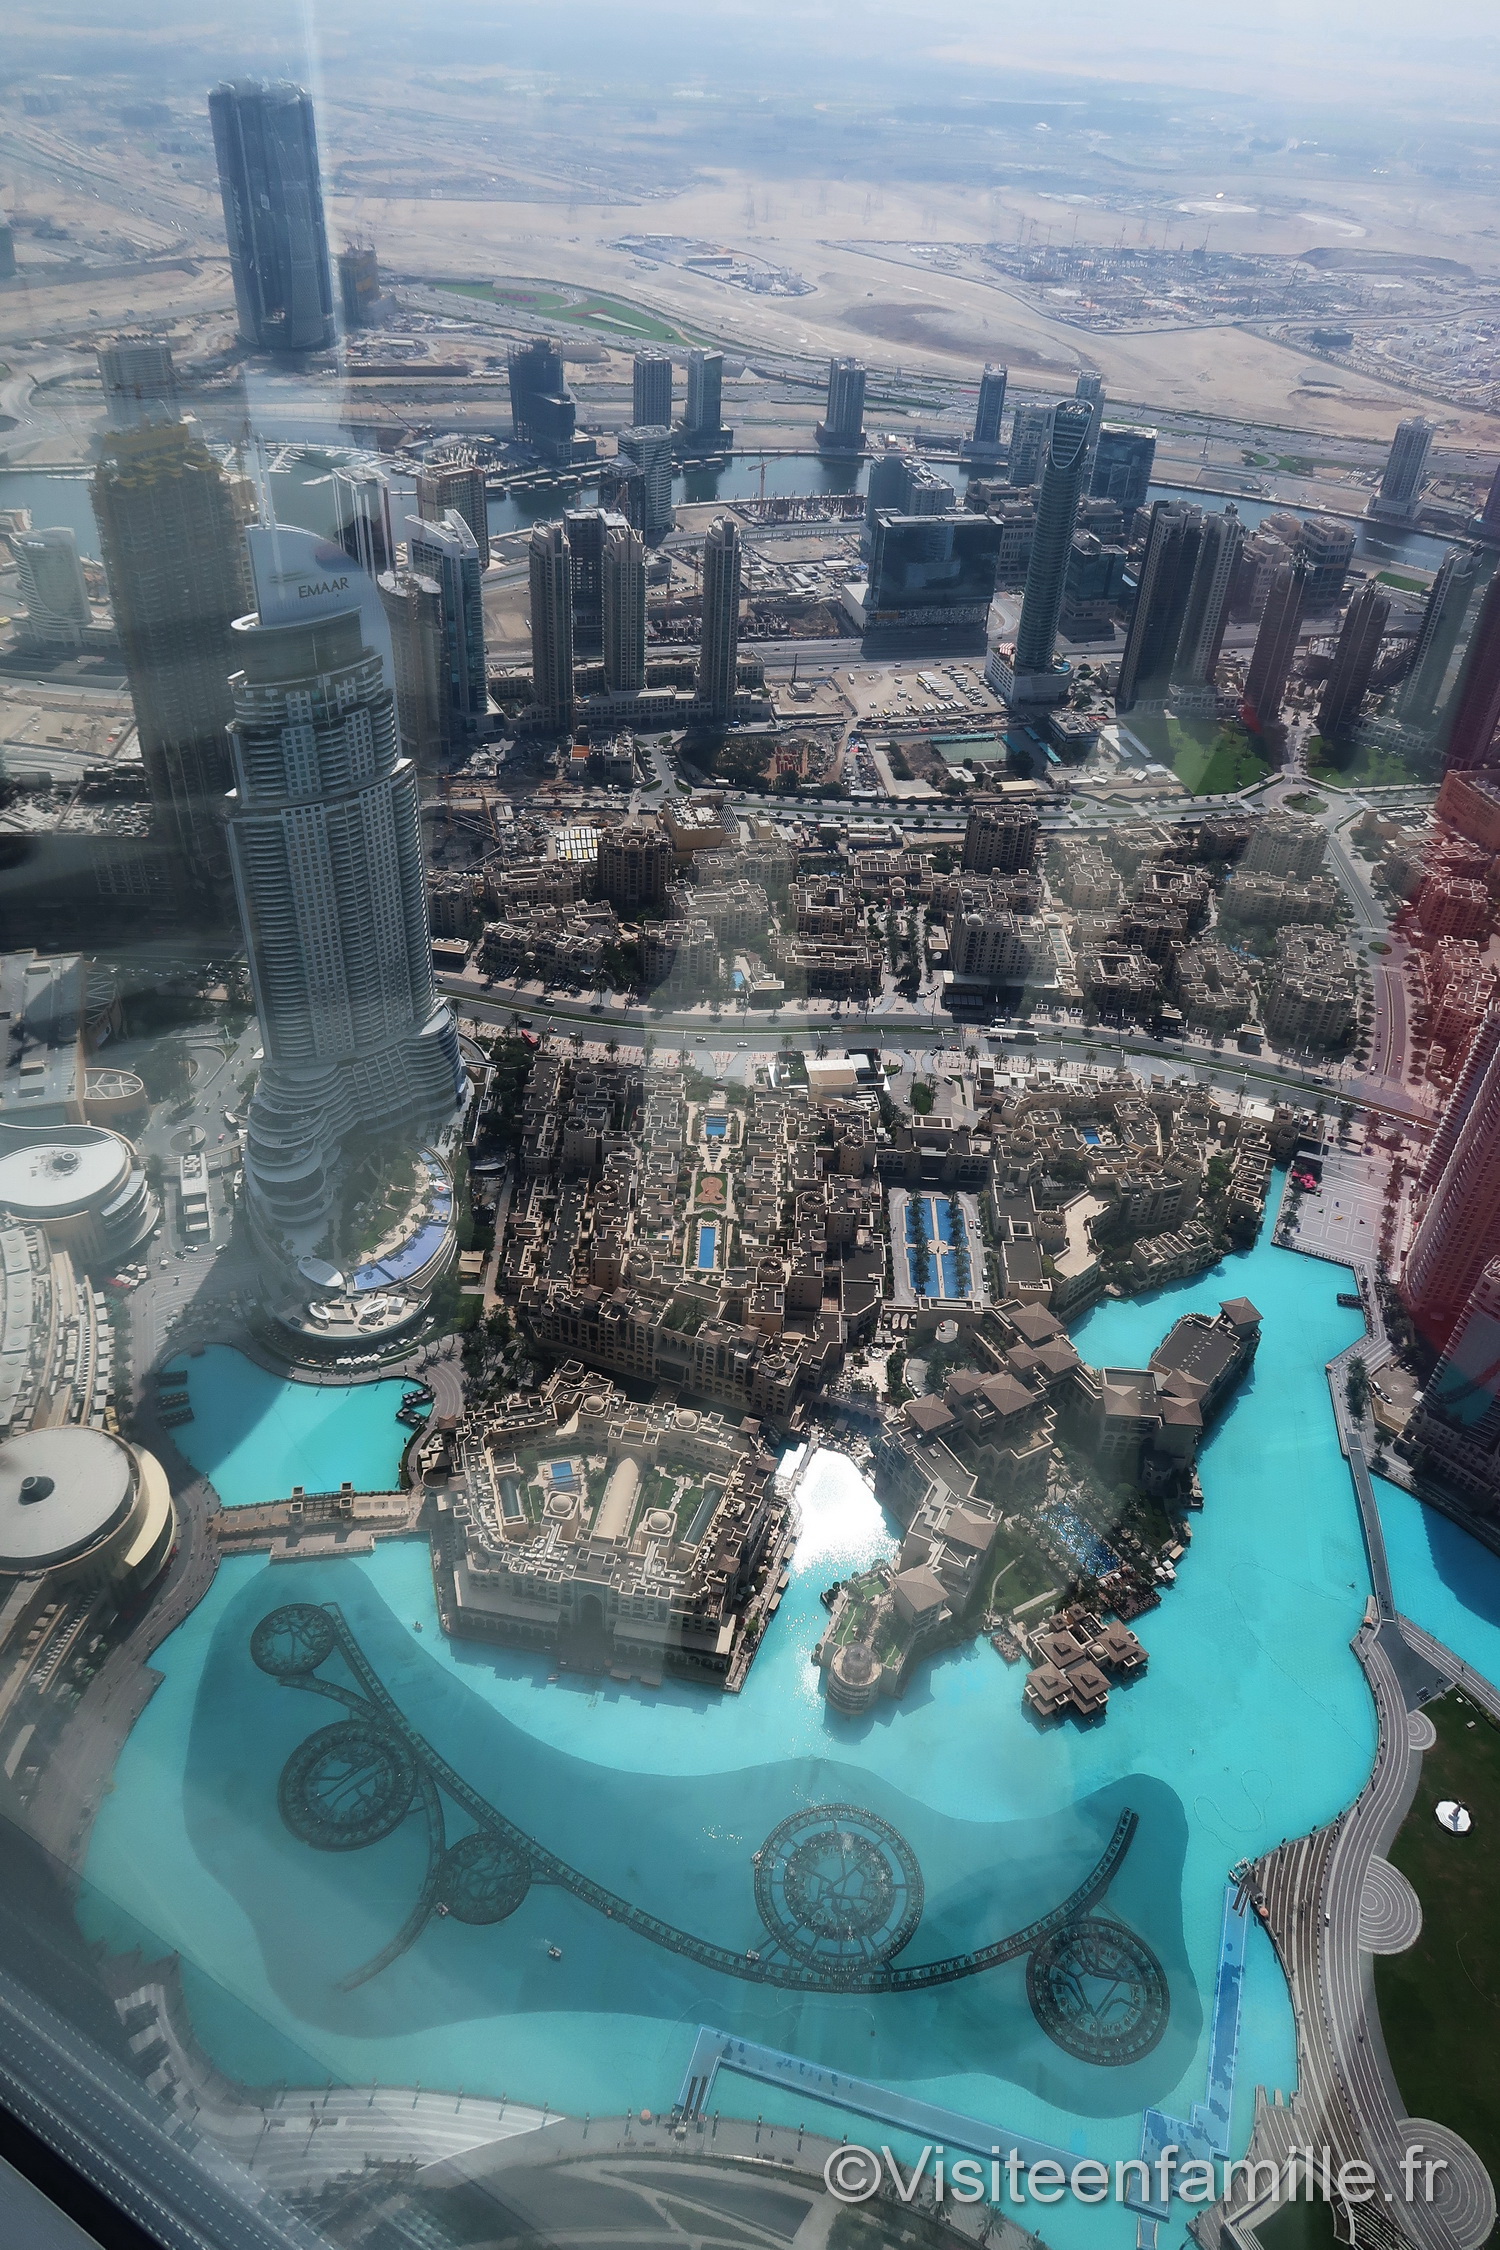 Visite De La Burj Khalifa La Tour La Plus Haute Du Monde Visite En